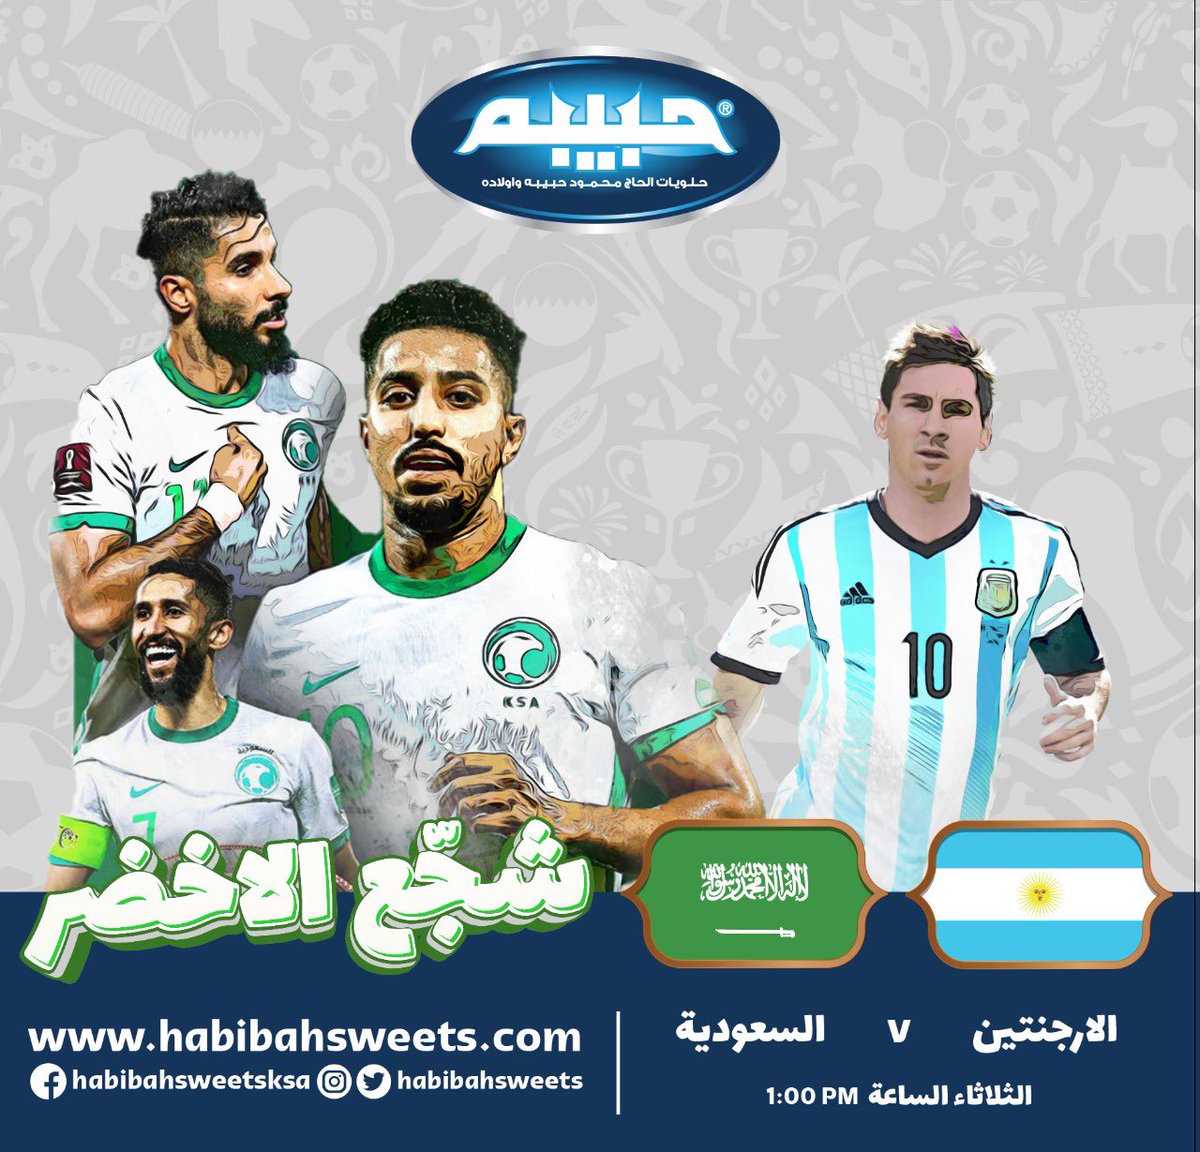 نتمنى التوفيق للأخضر السعودي في مباراة اليوم امام الارجنتين #الارجنتين_السعوديه #FIFAWorldCup #حبيبة_الرياض #الرياض #المملكة_العربية_السعودية